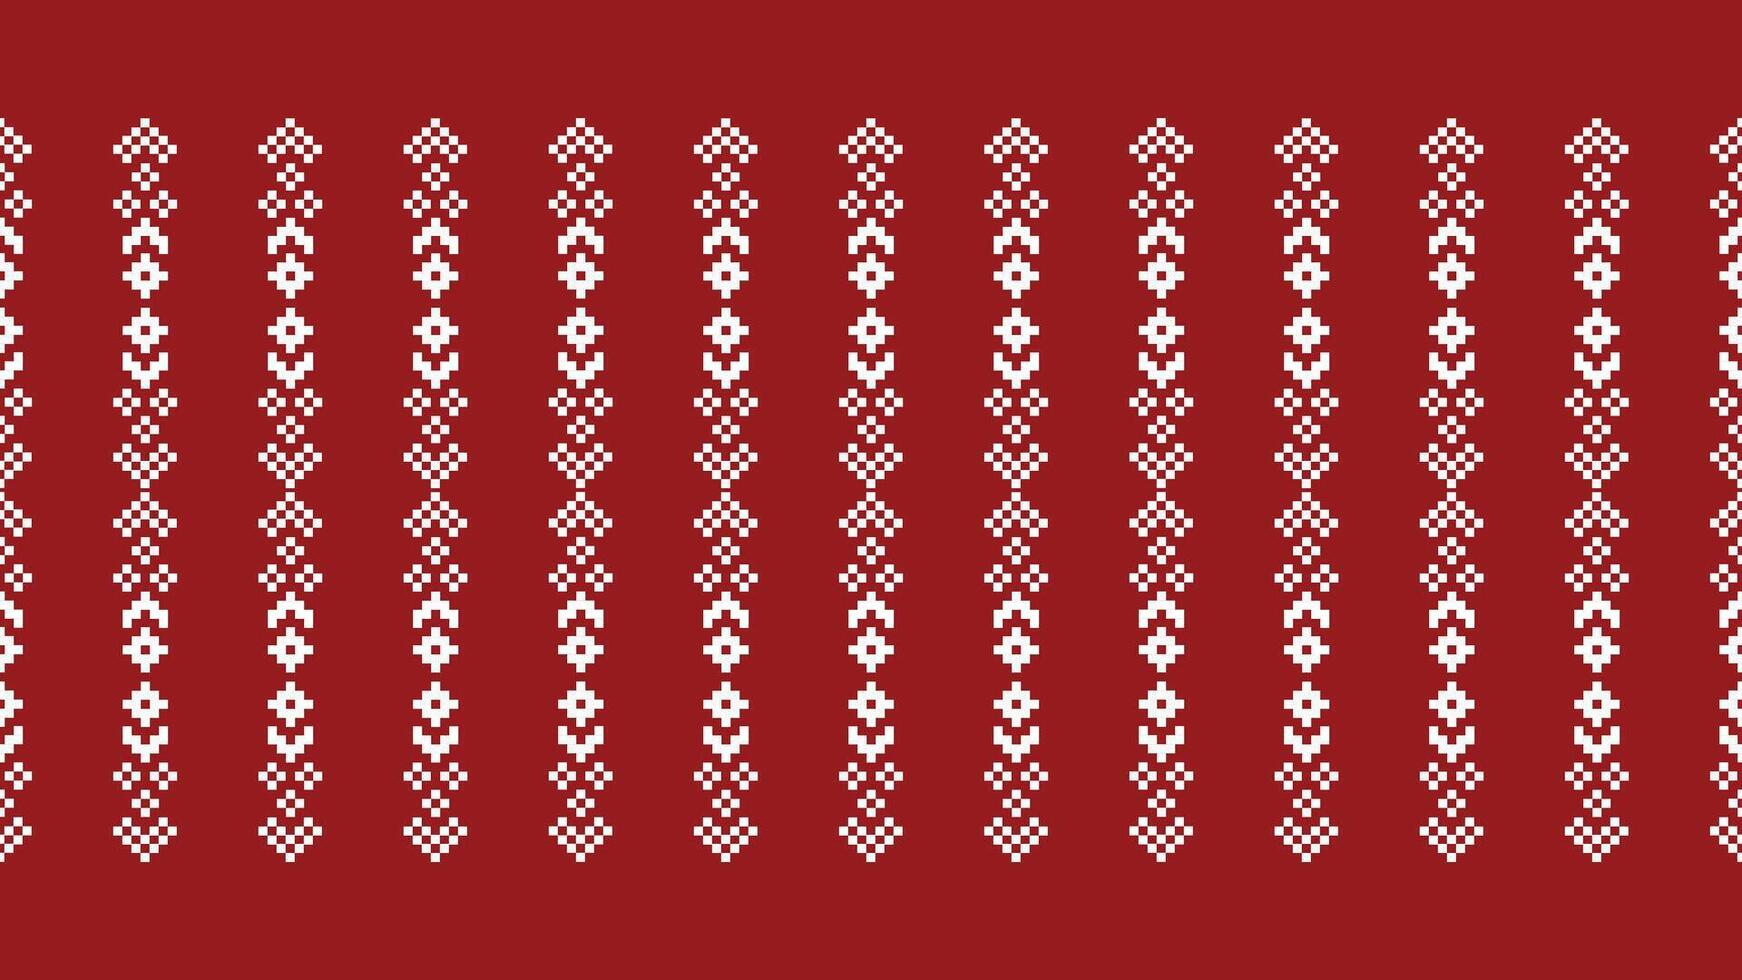 traditionell ethnisch Motive Ikat geometrisch Stoff Muster Kreuz Stich.ikat Stickerei ethnisch orientalisch Pixel rot Hintergrund. abstrakt, vektor, illustration. Textur, Weihnachten, Dekoration, Tapete. vektor